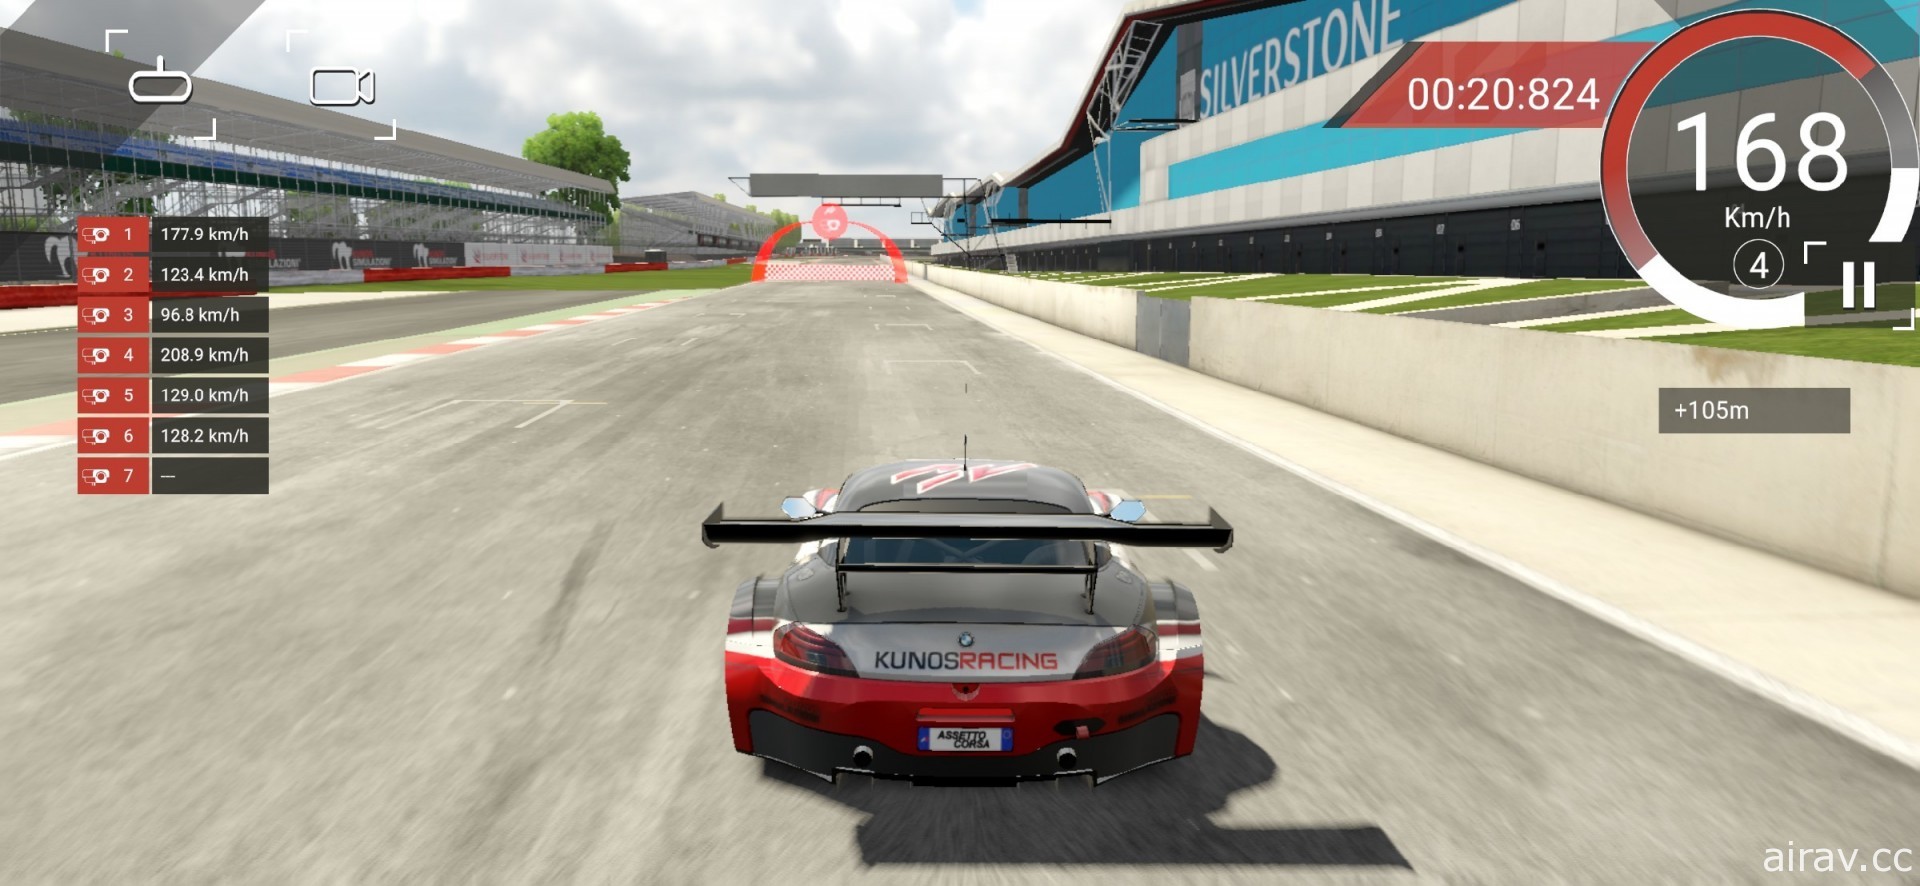 赛车模拟游戏《出赛准备》行动版正式登上 App Store 随时随地享受竞速乐趣